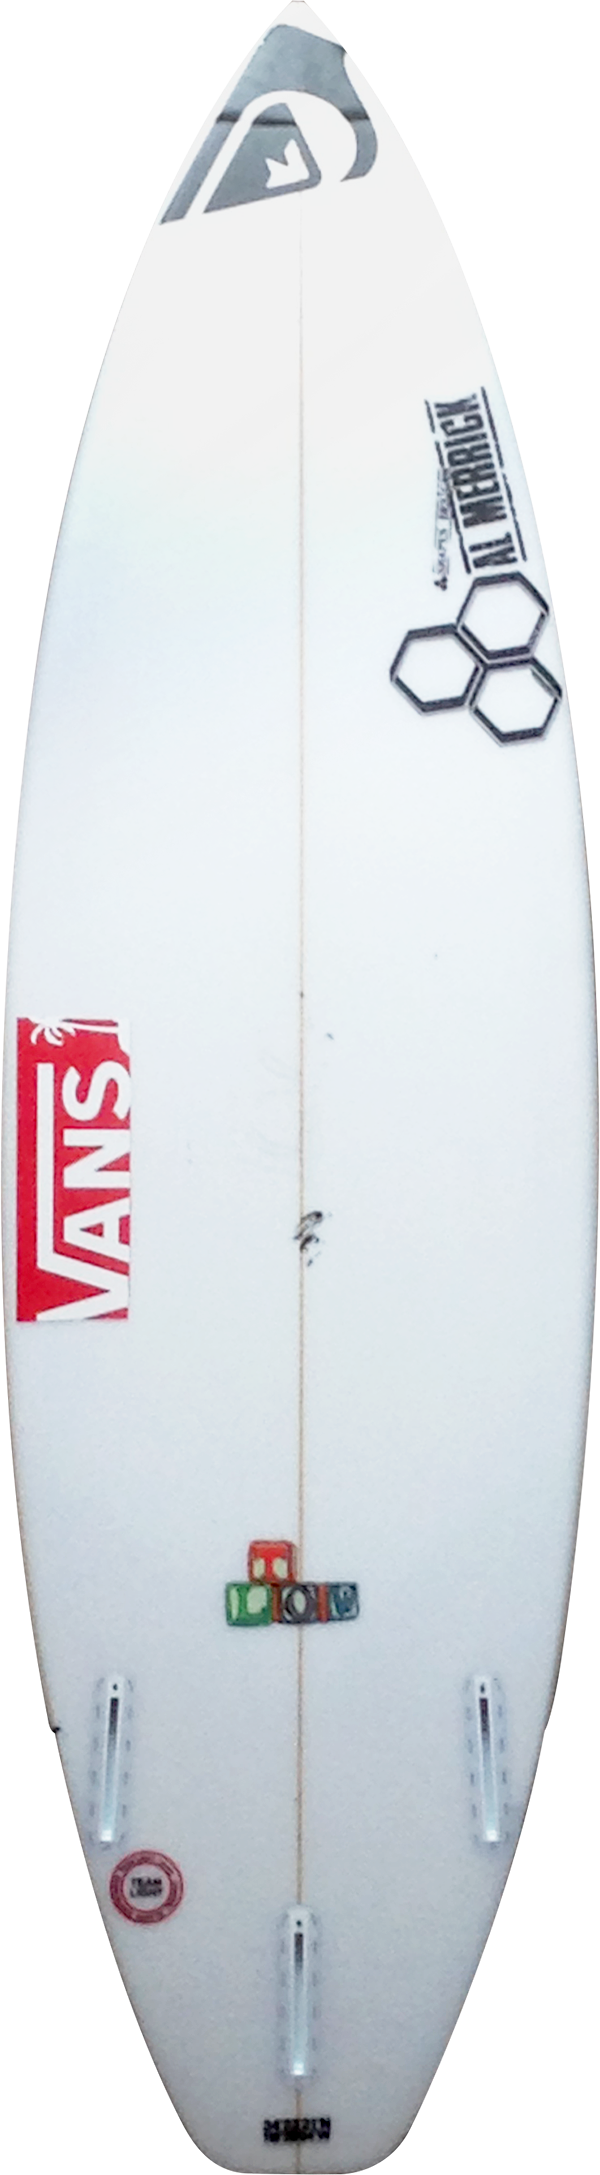 T-Low | チャネルアイランズサーフボード Channel Islands Surfboards 